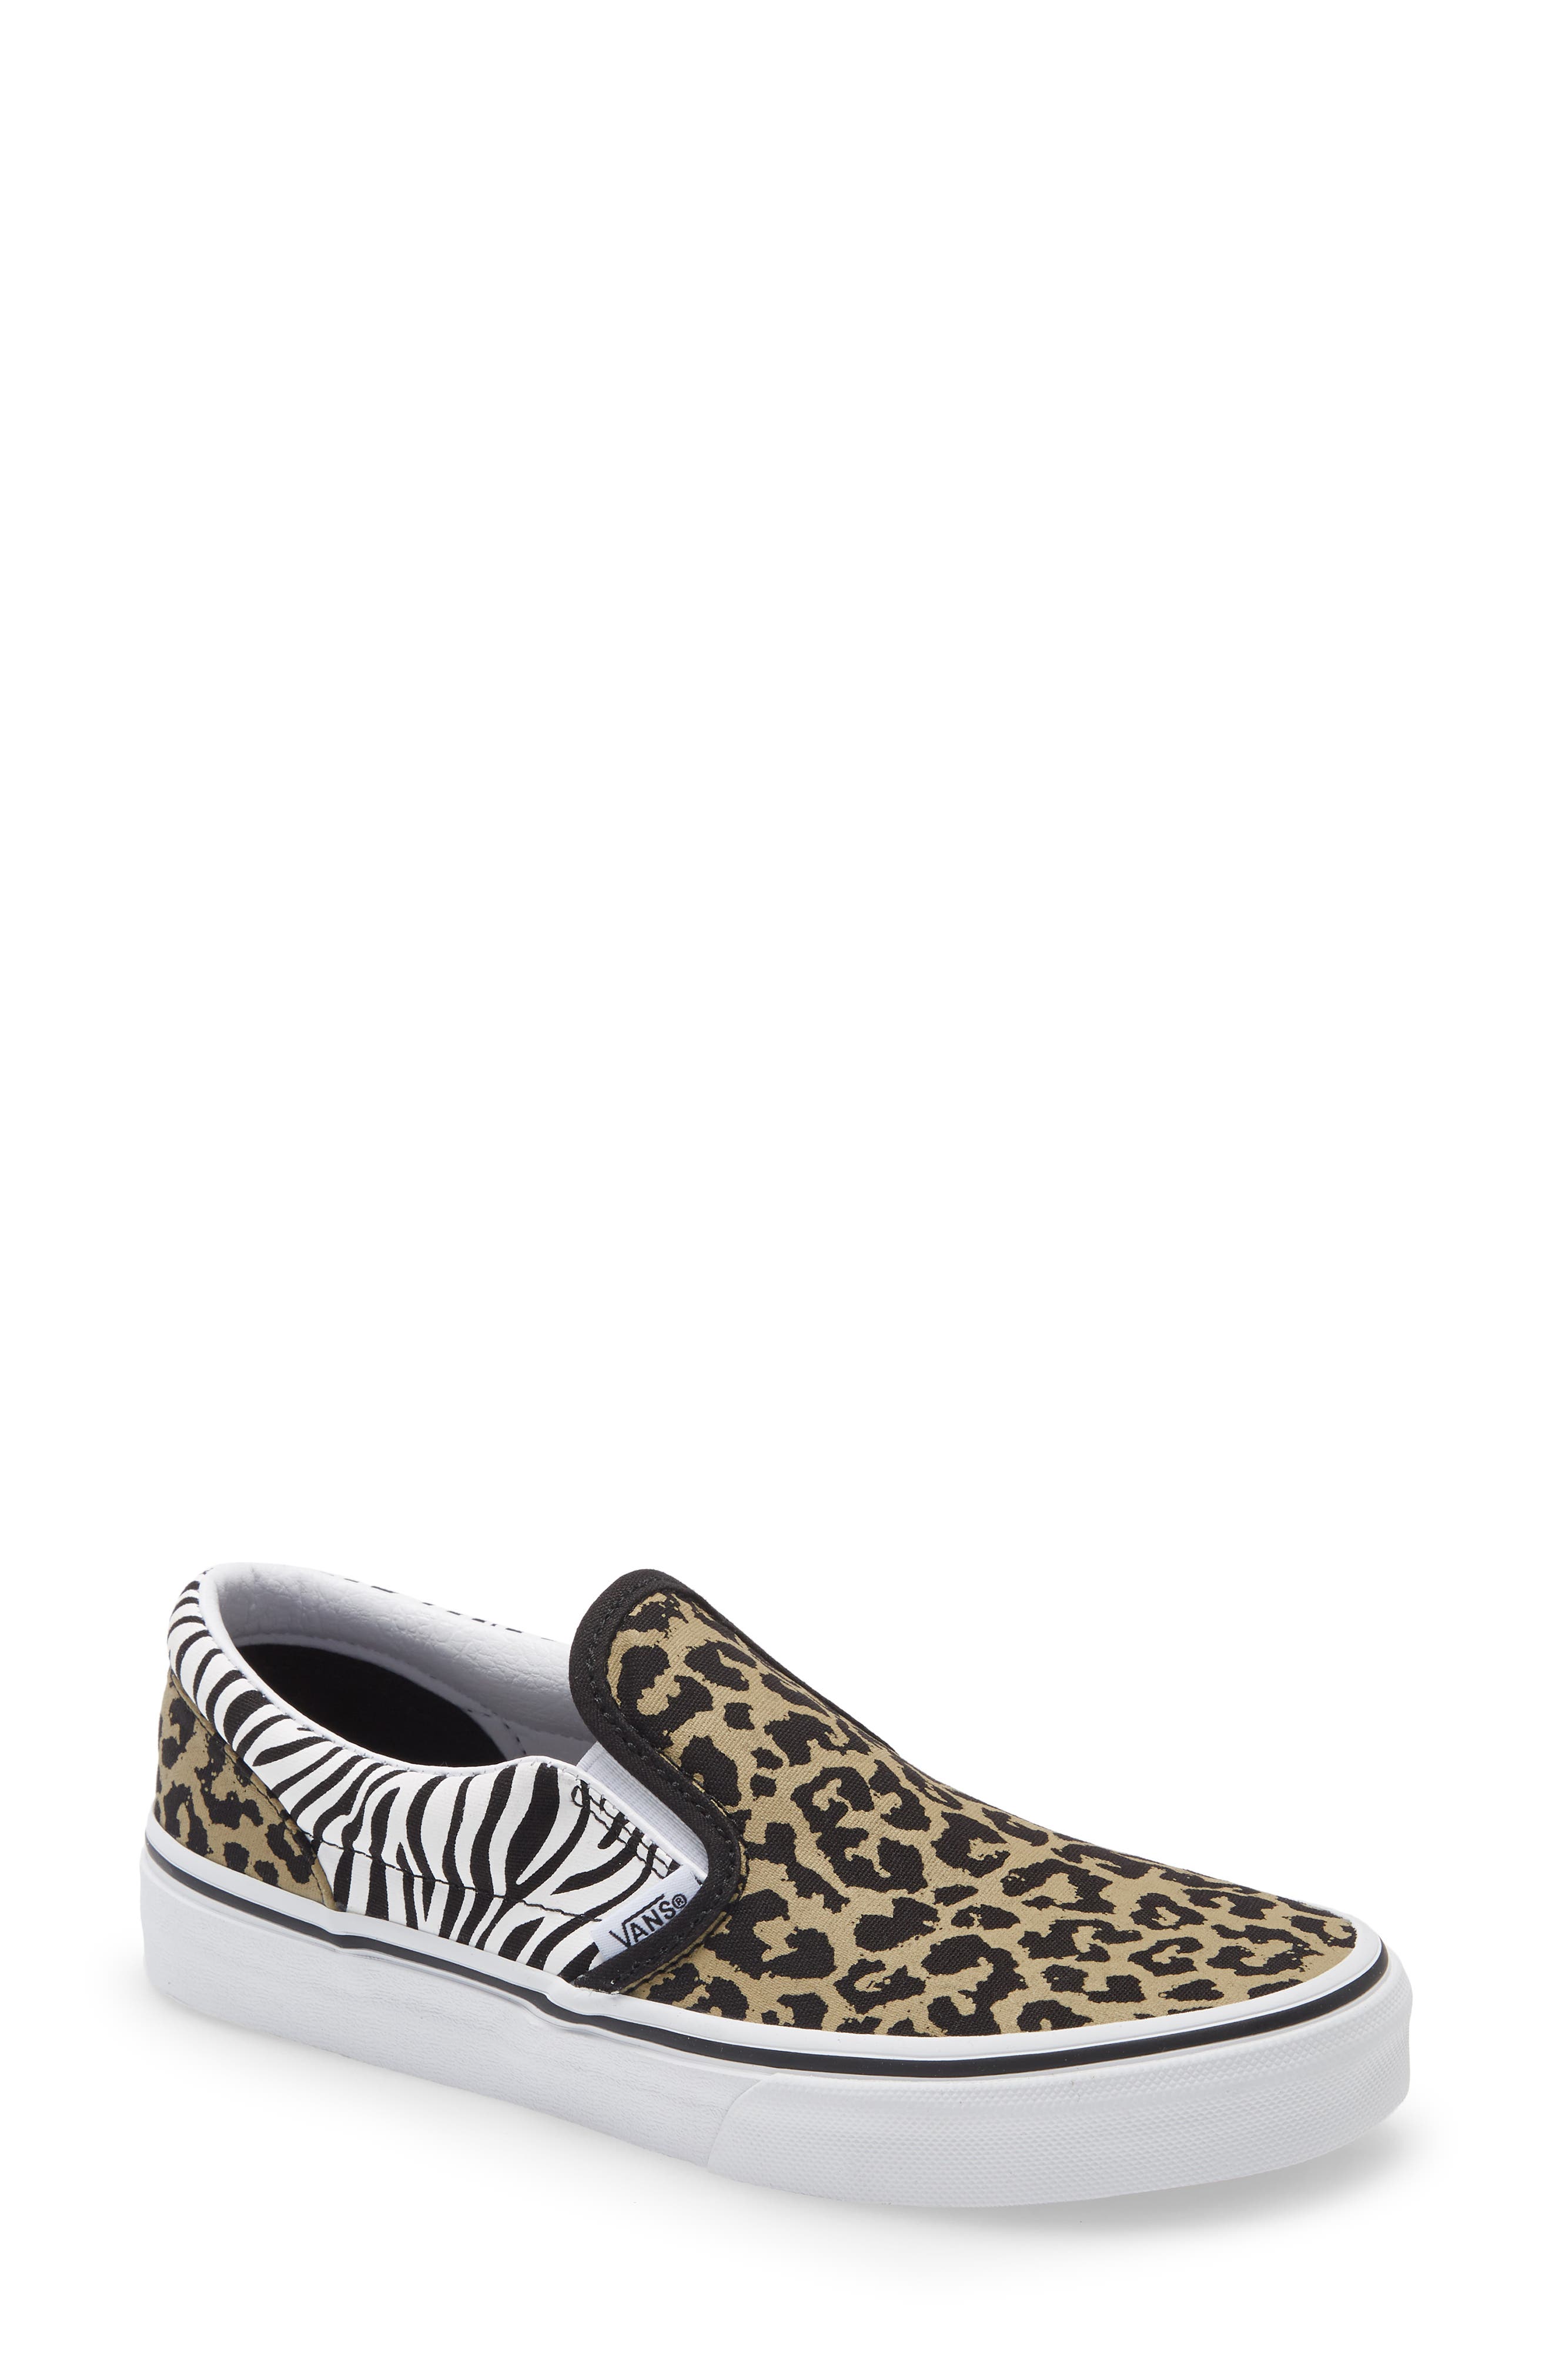 leopard sneakers | Nordstrom